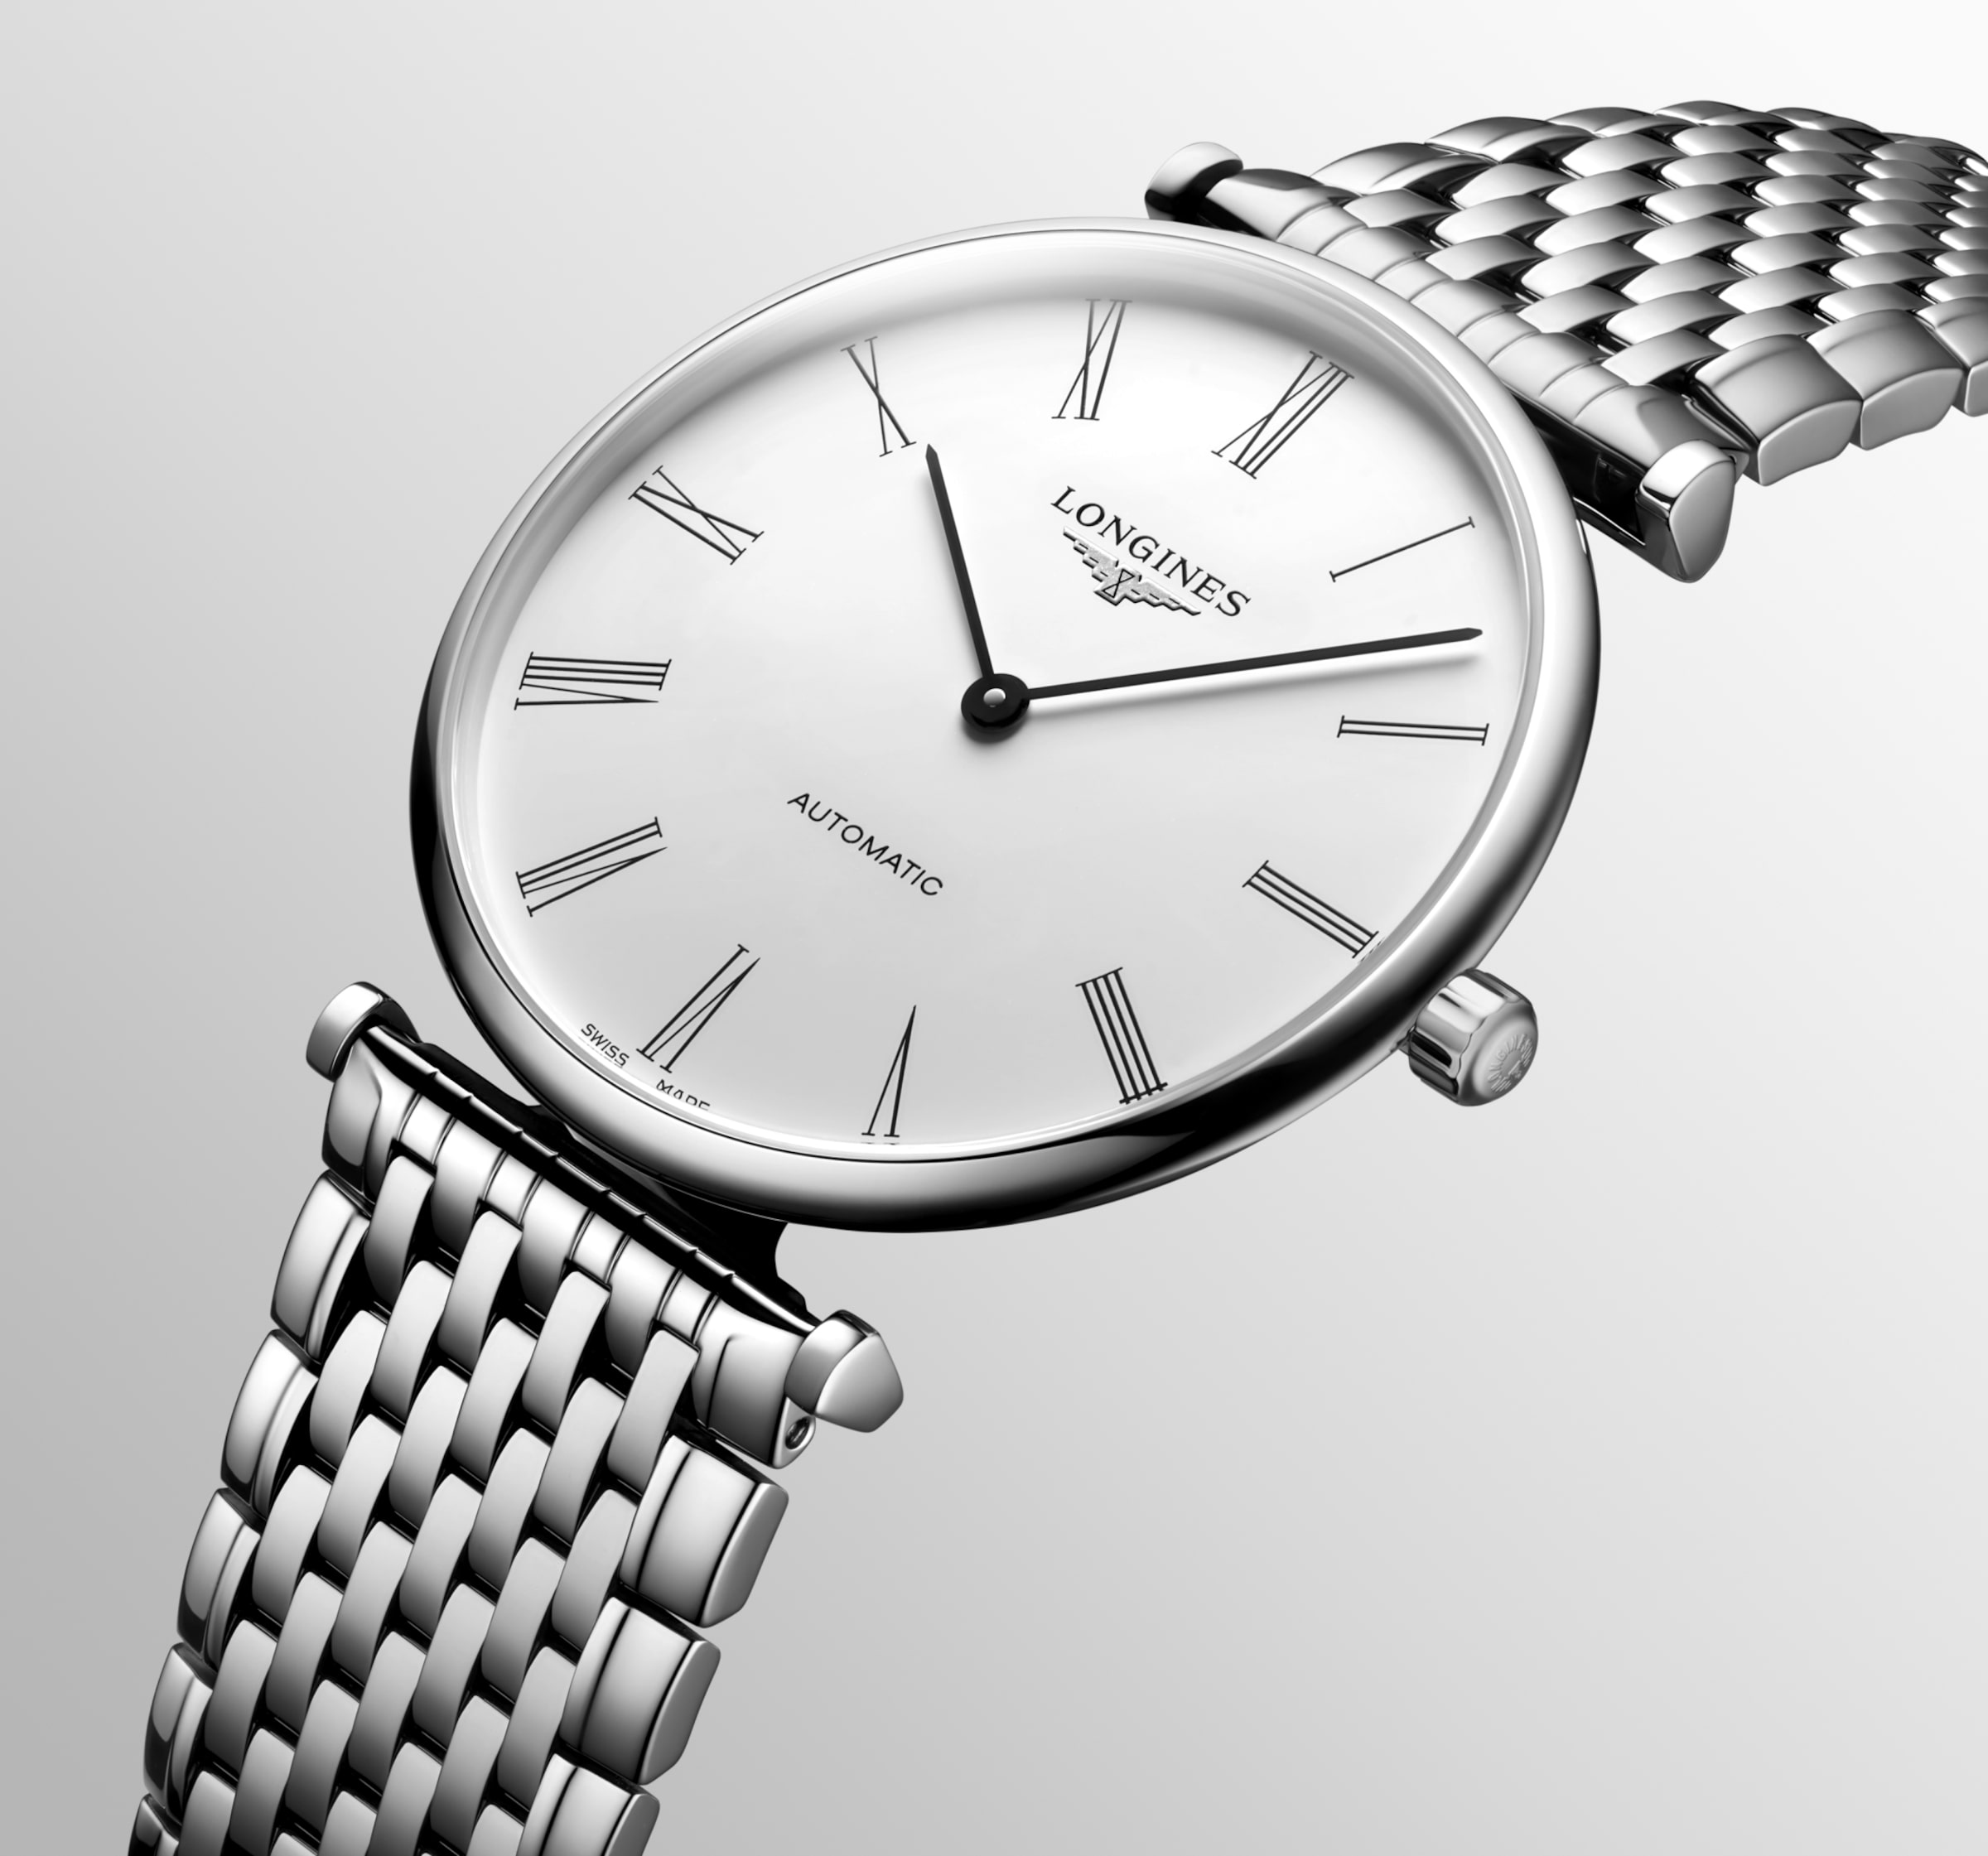 Longines LA GRANDE CLASSIQUE DE LONGINES Automatic Stainless steel Watch - L4.918.4.11.6